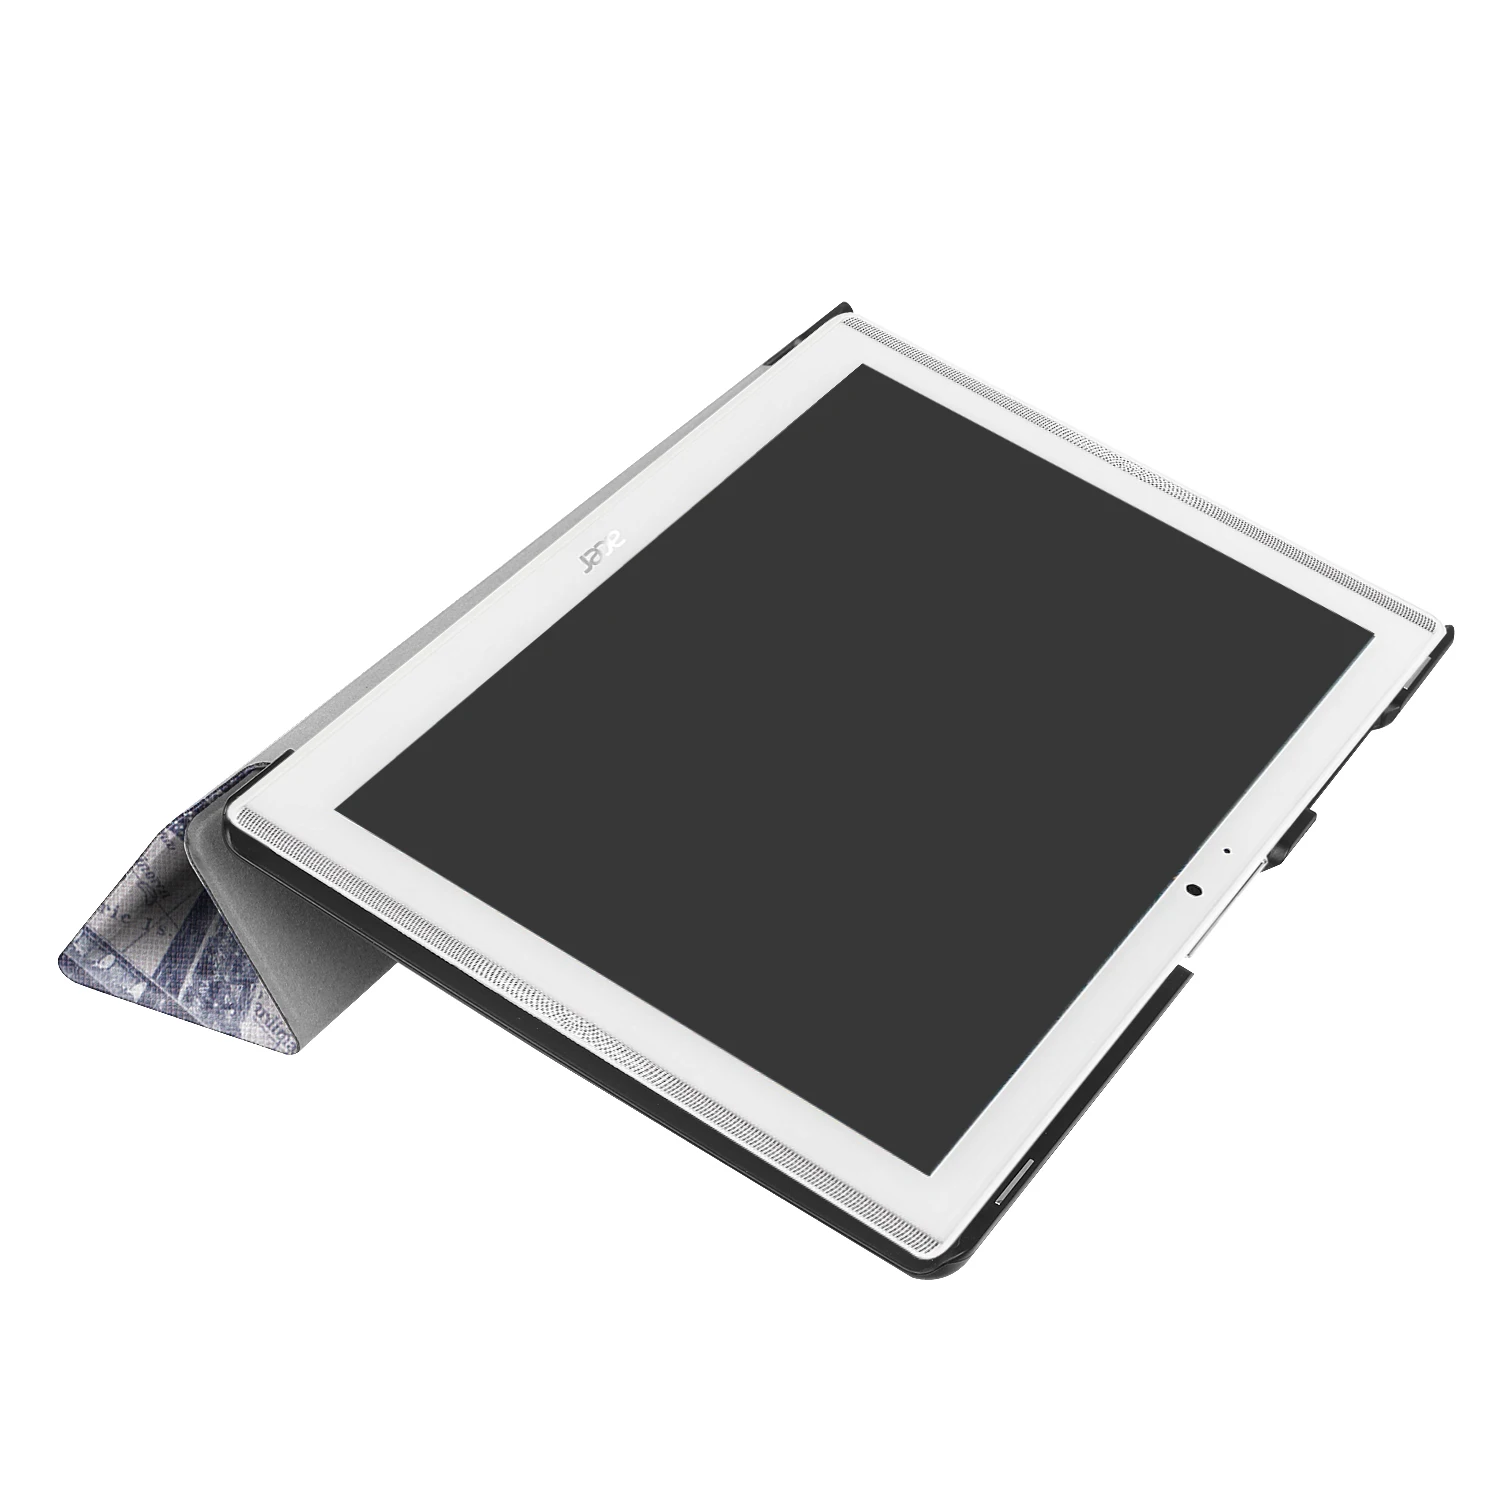 Чехол для планшета acer Iconia One 10(B3-A40), чехол для планшета acer B3-A40 10 дюймов, чехол для планшета с откидной крышкой и принтом, кожаный чехол с подставкой, тонкий чехол+ ручка